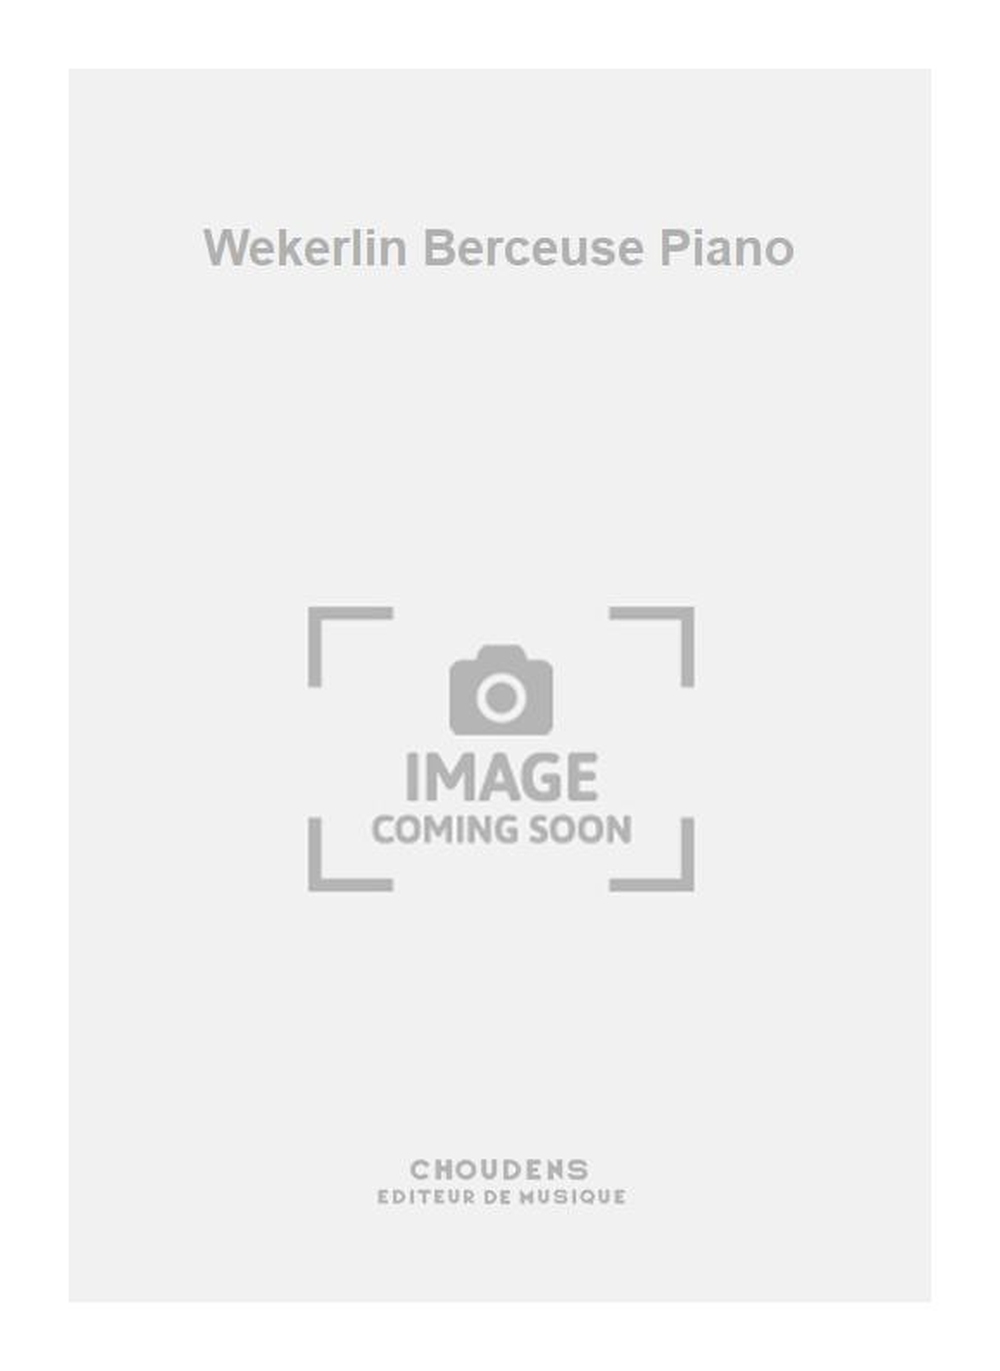 J.B. Wekerlin: Wekerlin Berceuse Piano